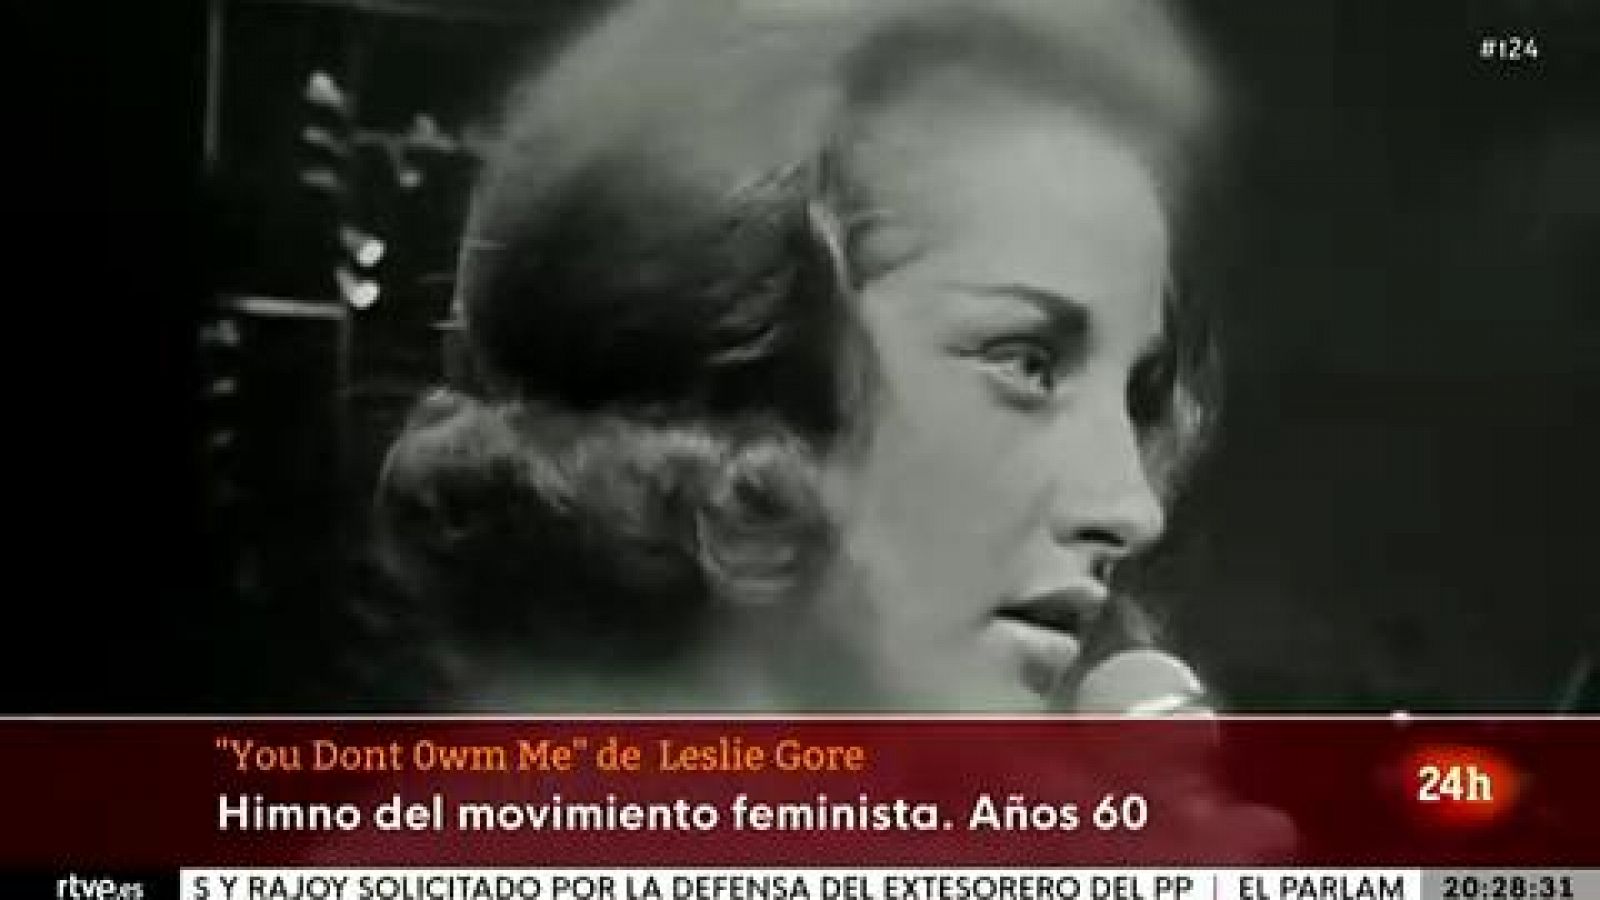 "You don't owe me": Vuelve el himno feminista de los años 60